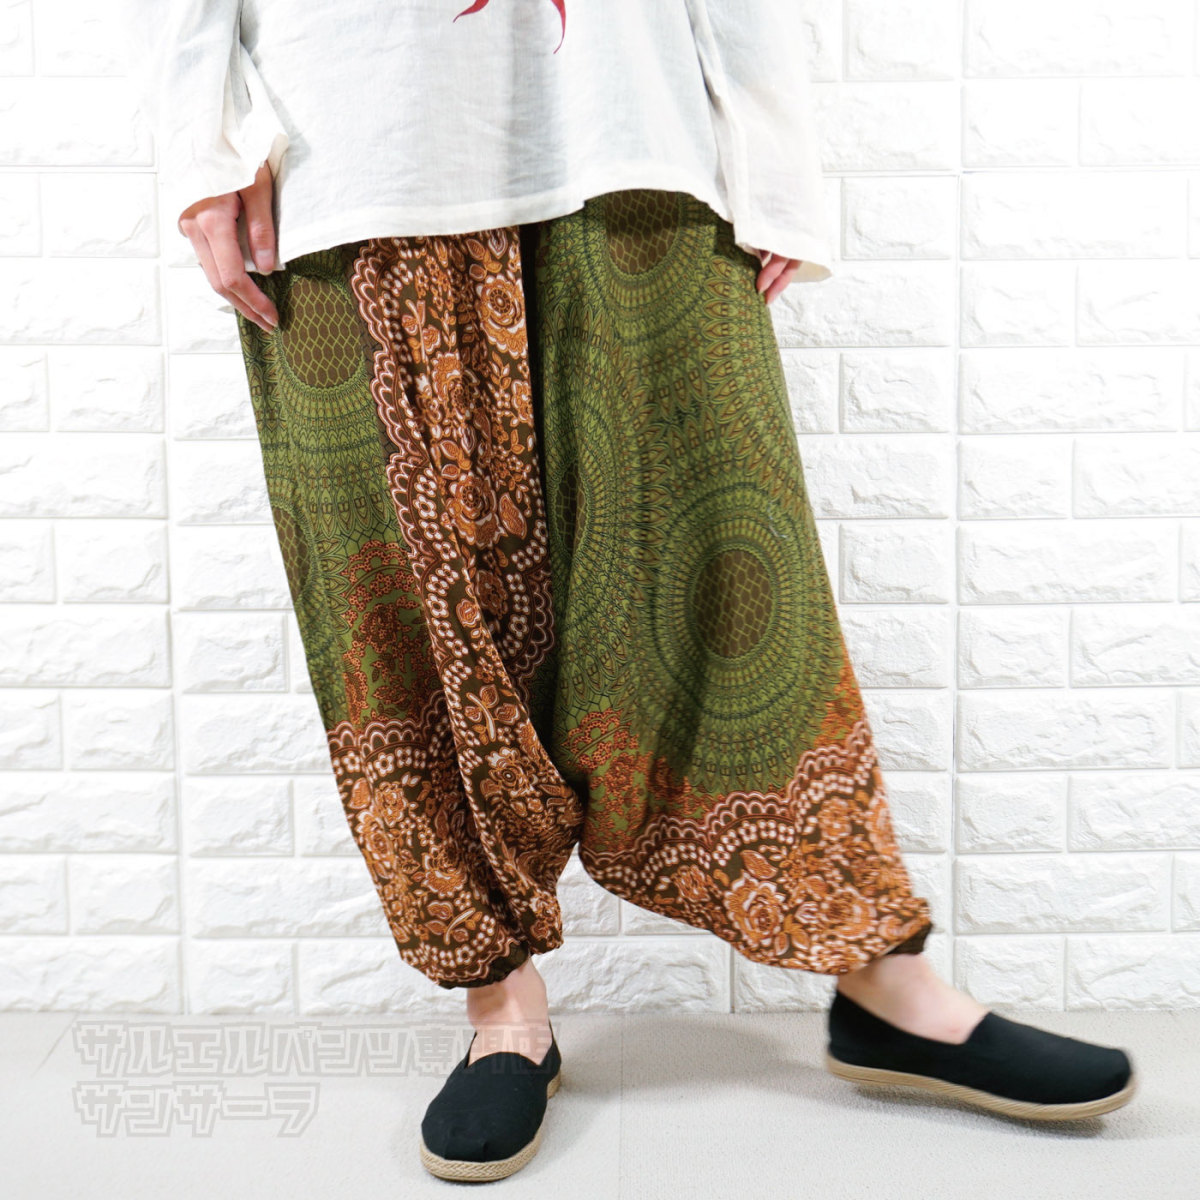  шаровары olientaru брюки Aladdin брюки женский искусственный шелк легкий брюки Thai брюки этнический мода весна лето осень раса 